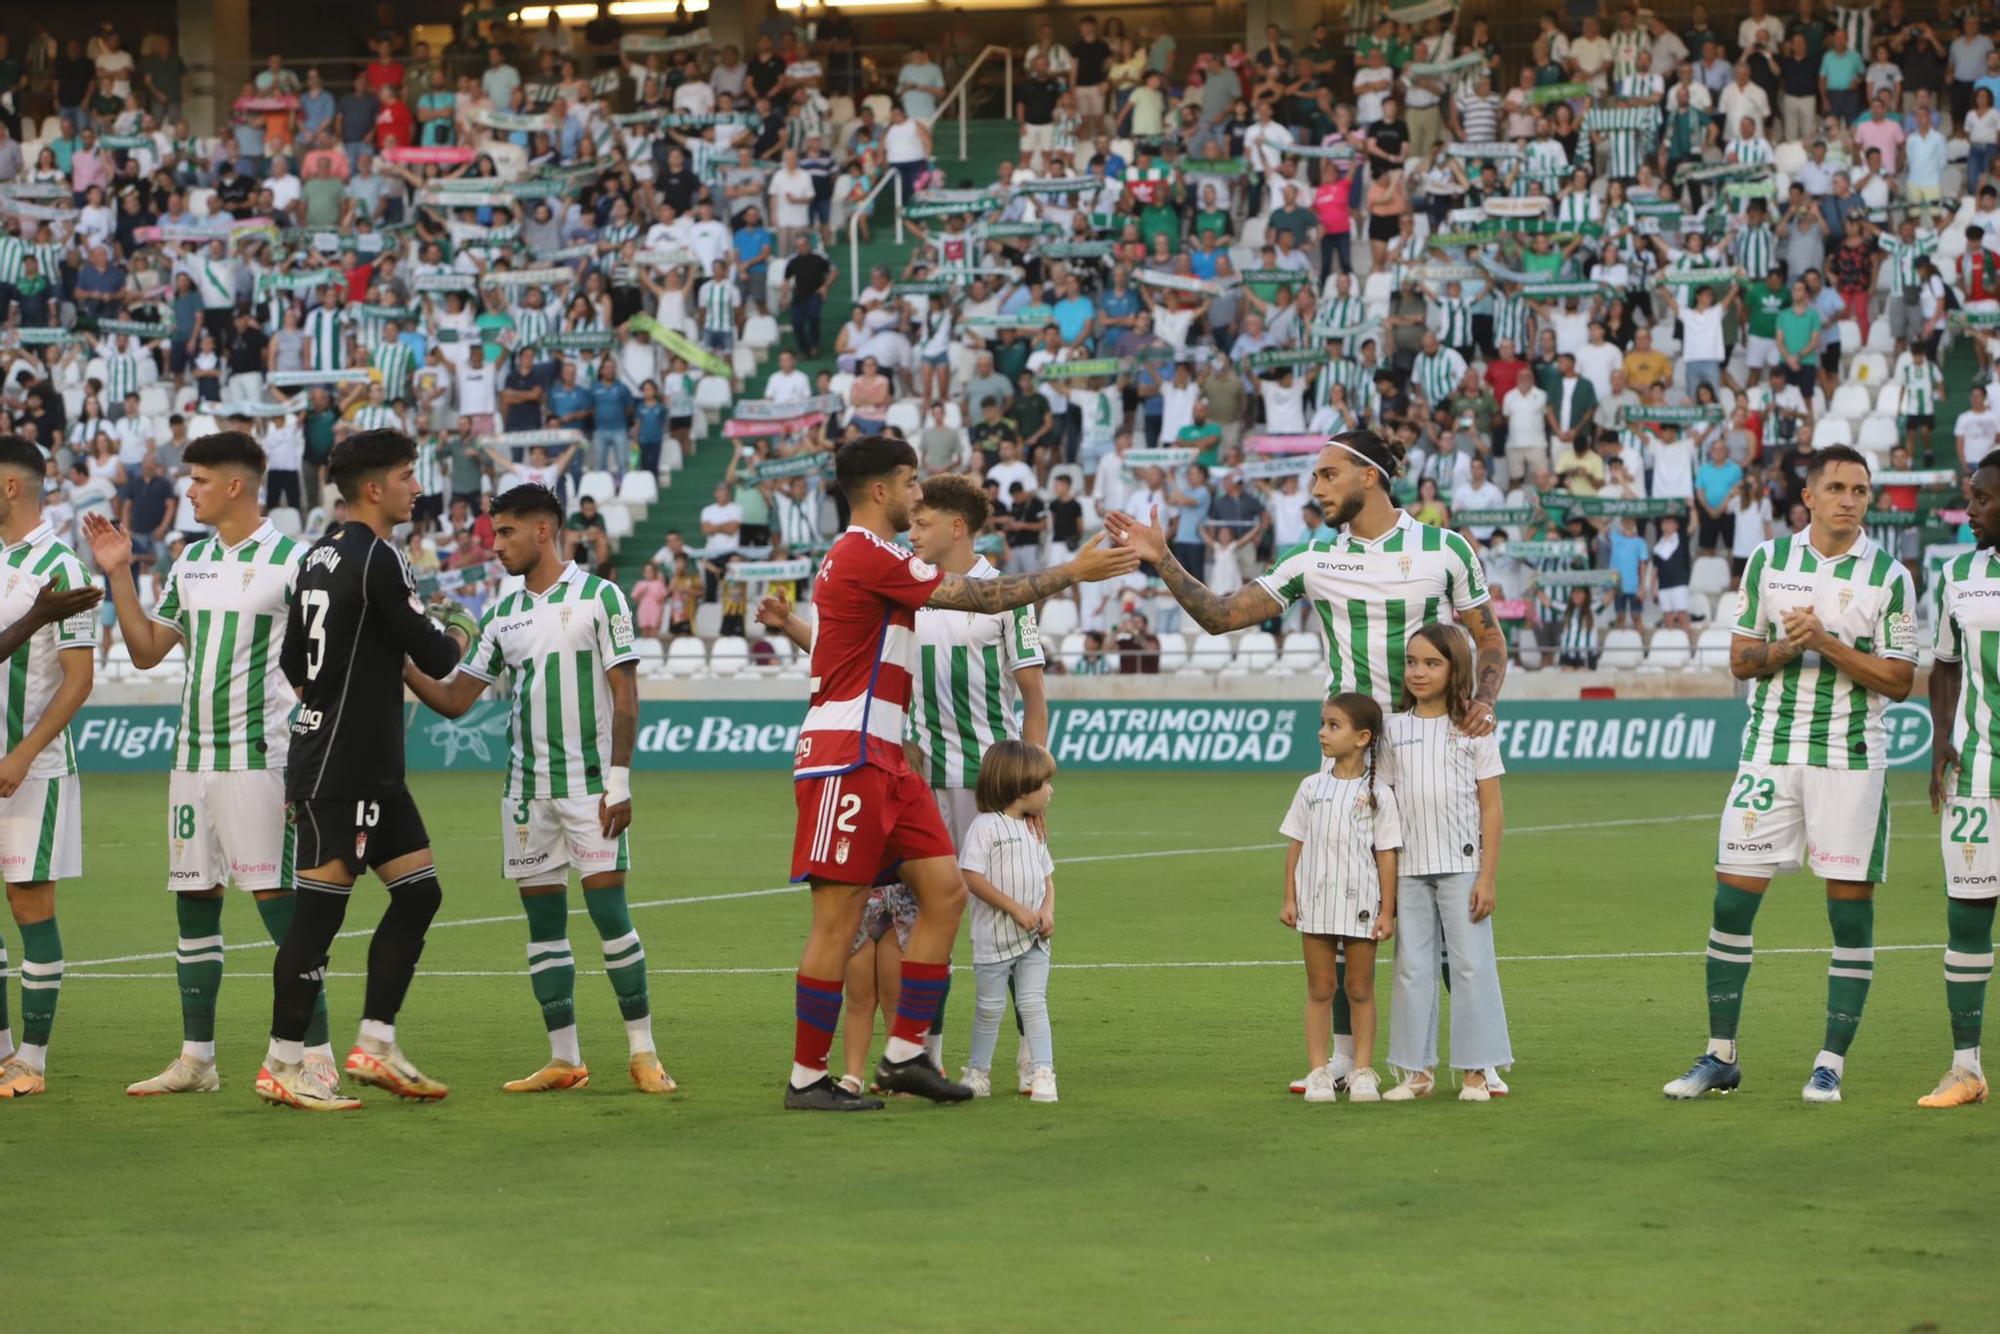 Córdoba CF - Recreativo Granada : las imágenes del partido en El Arcángel